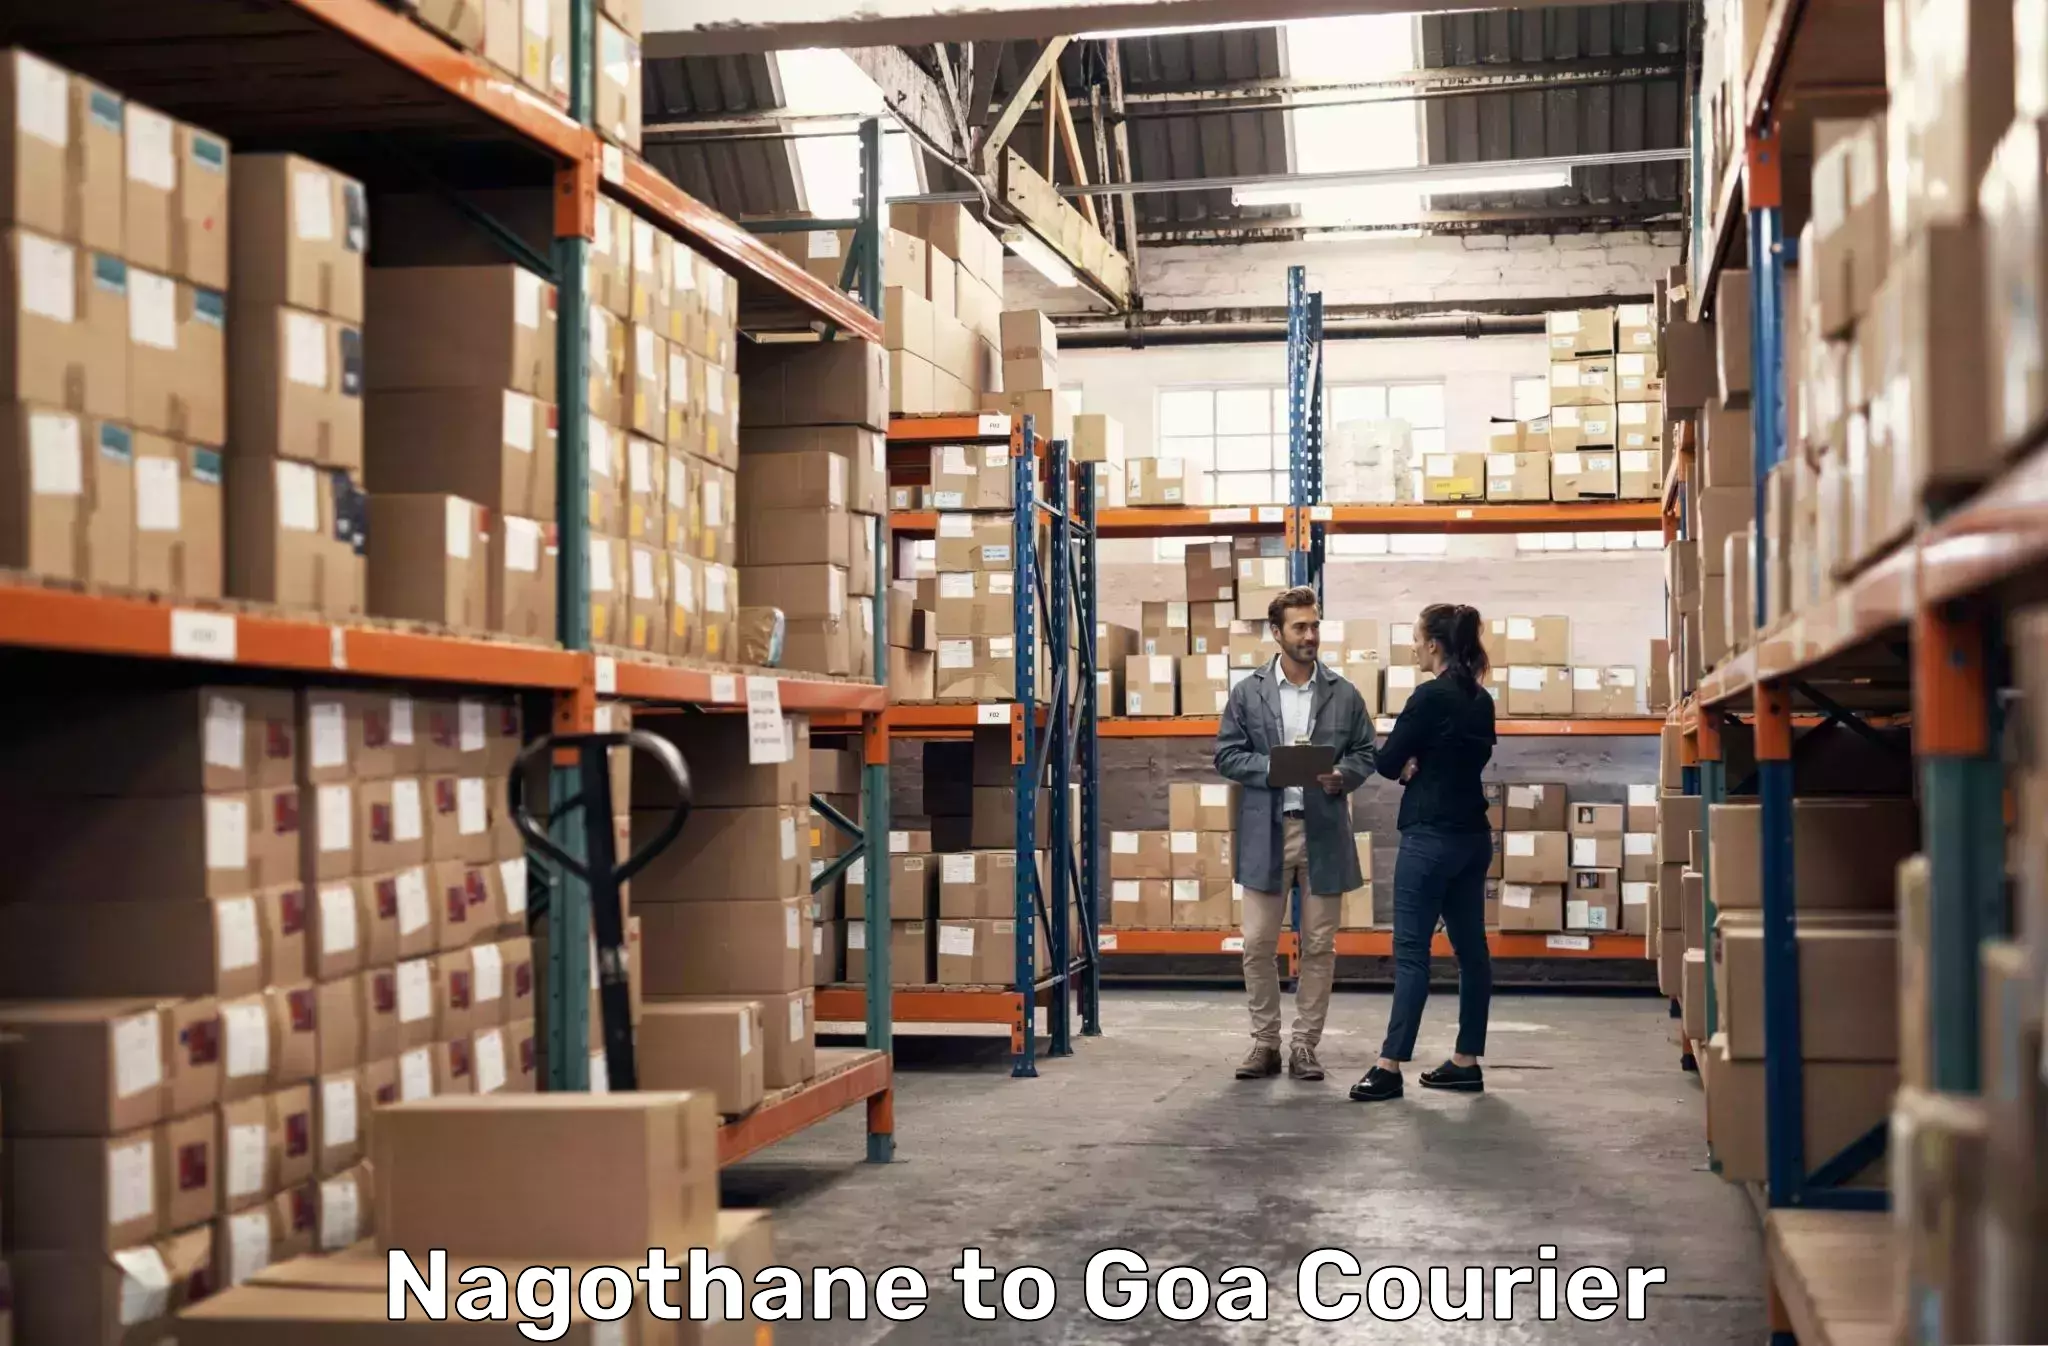 24-hour courier service Nagothane to Goa